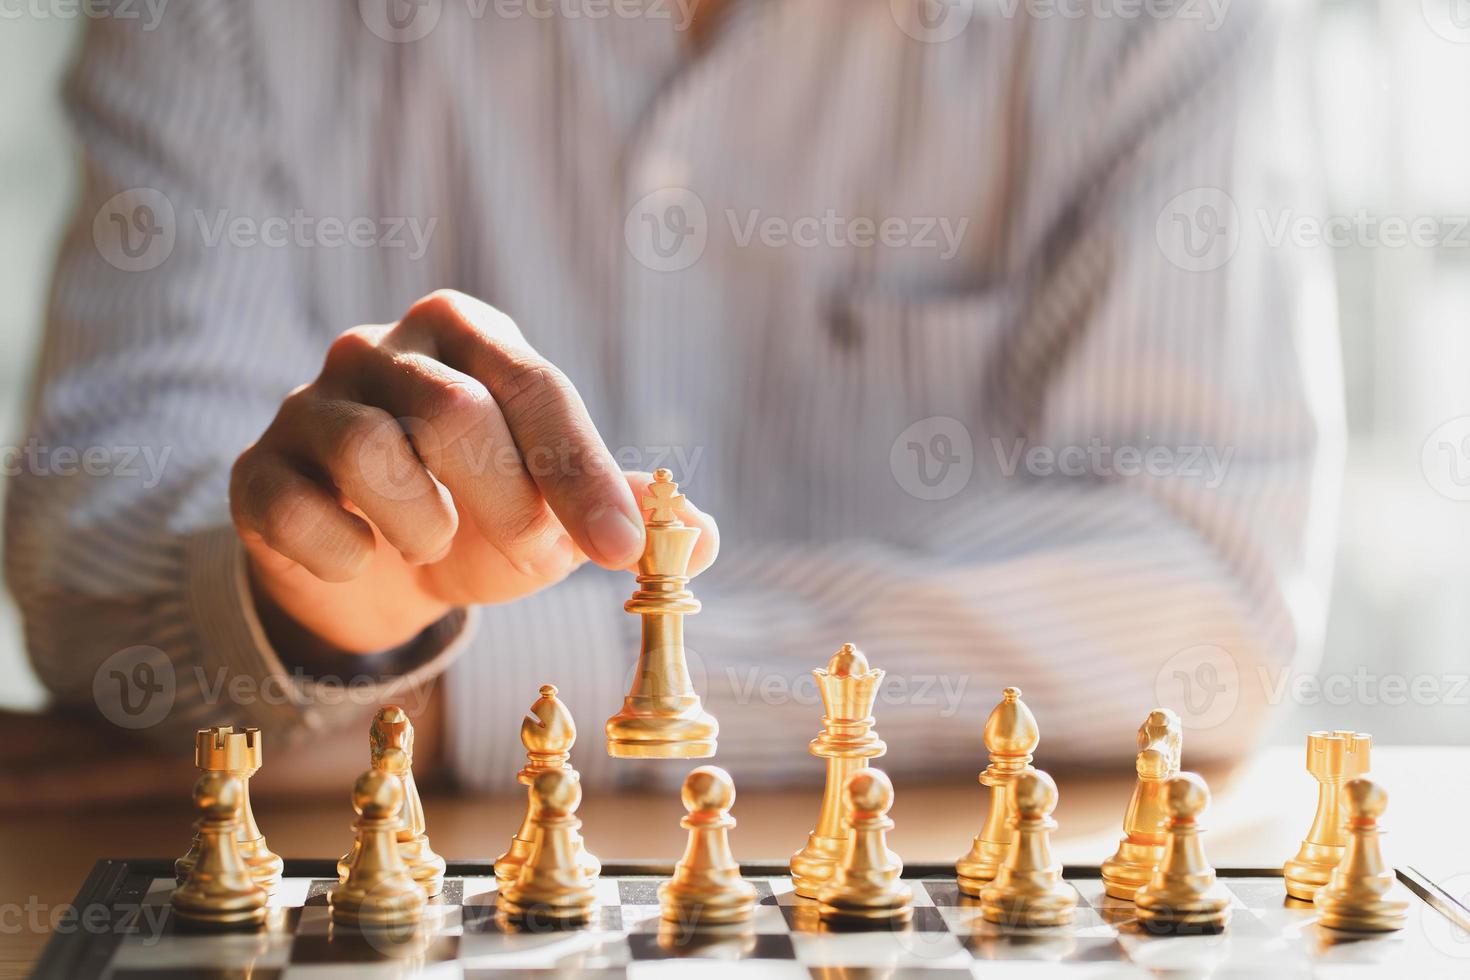 zakenman hand bewegende gouden schaakkoning figuur en schaakmat tegenstander tijdens schaakbord competitie. strategie, succes, management, bedrijfsplanning, disruptie en leiderschapsconcept foto